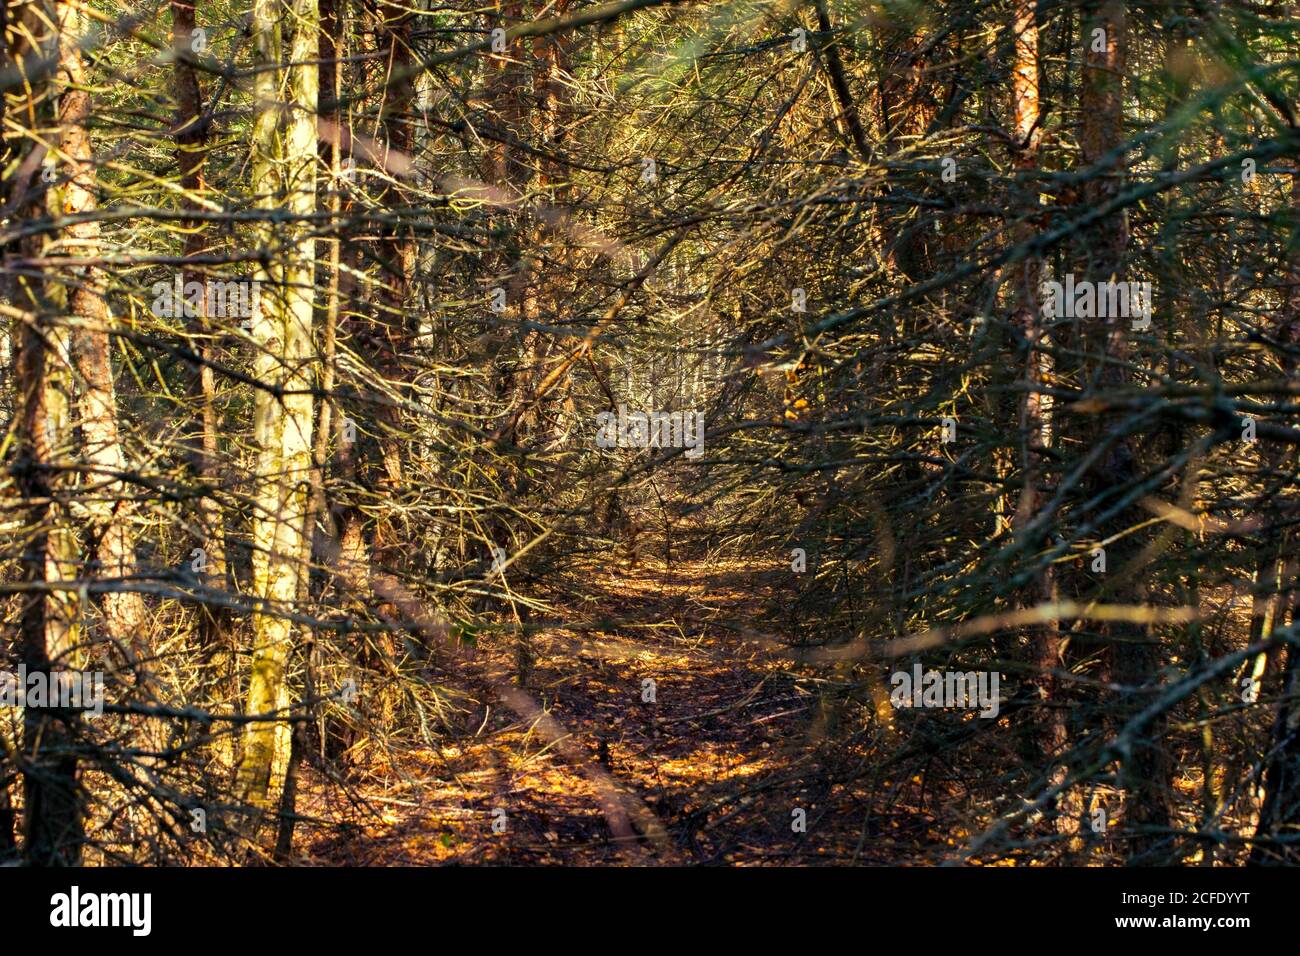 Oscura foresta con morti aride trees.The sfondo è una foresta cupa e drammatica. Foto Stock